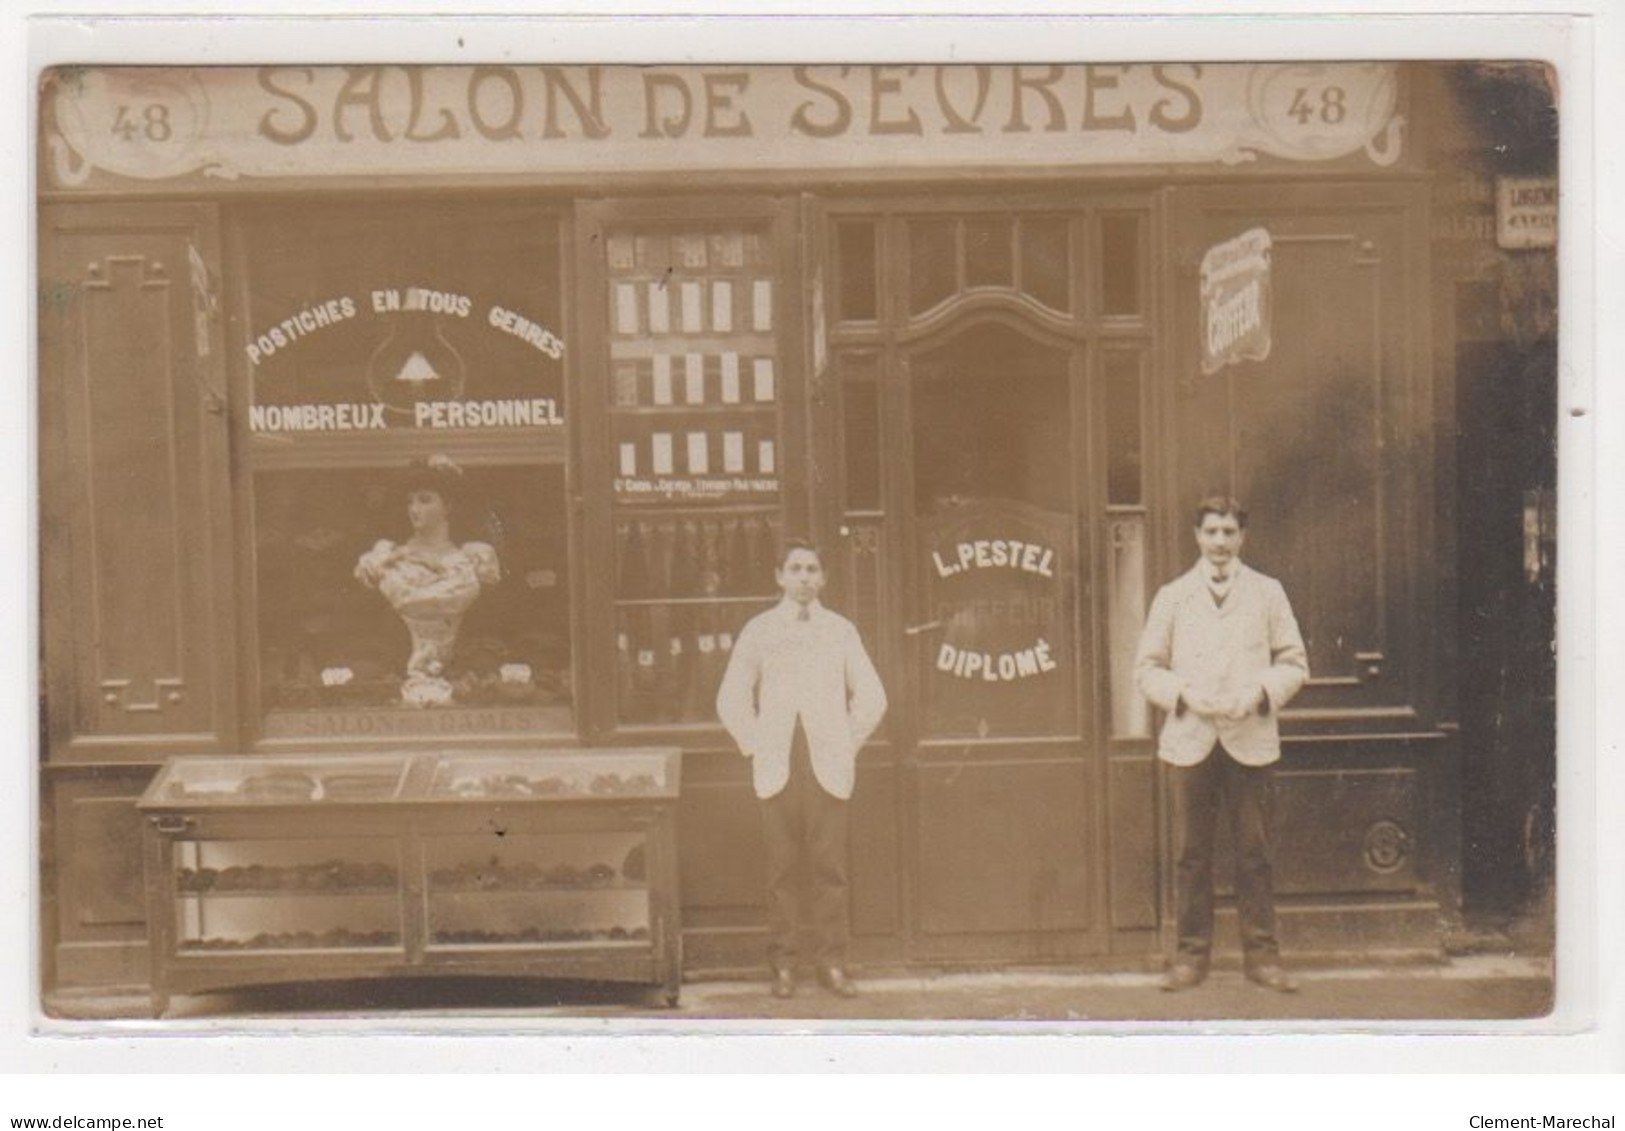 PARIS : Carte Photo Du Salon De Coiffure De Sevres (PESTEL - Coiffeur) Au 48 Rue De Sevres - Bon état - Distretto: 07